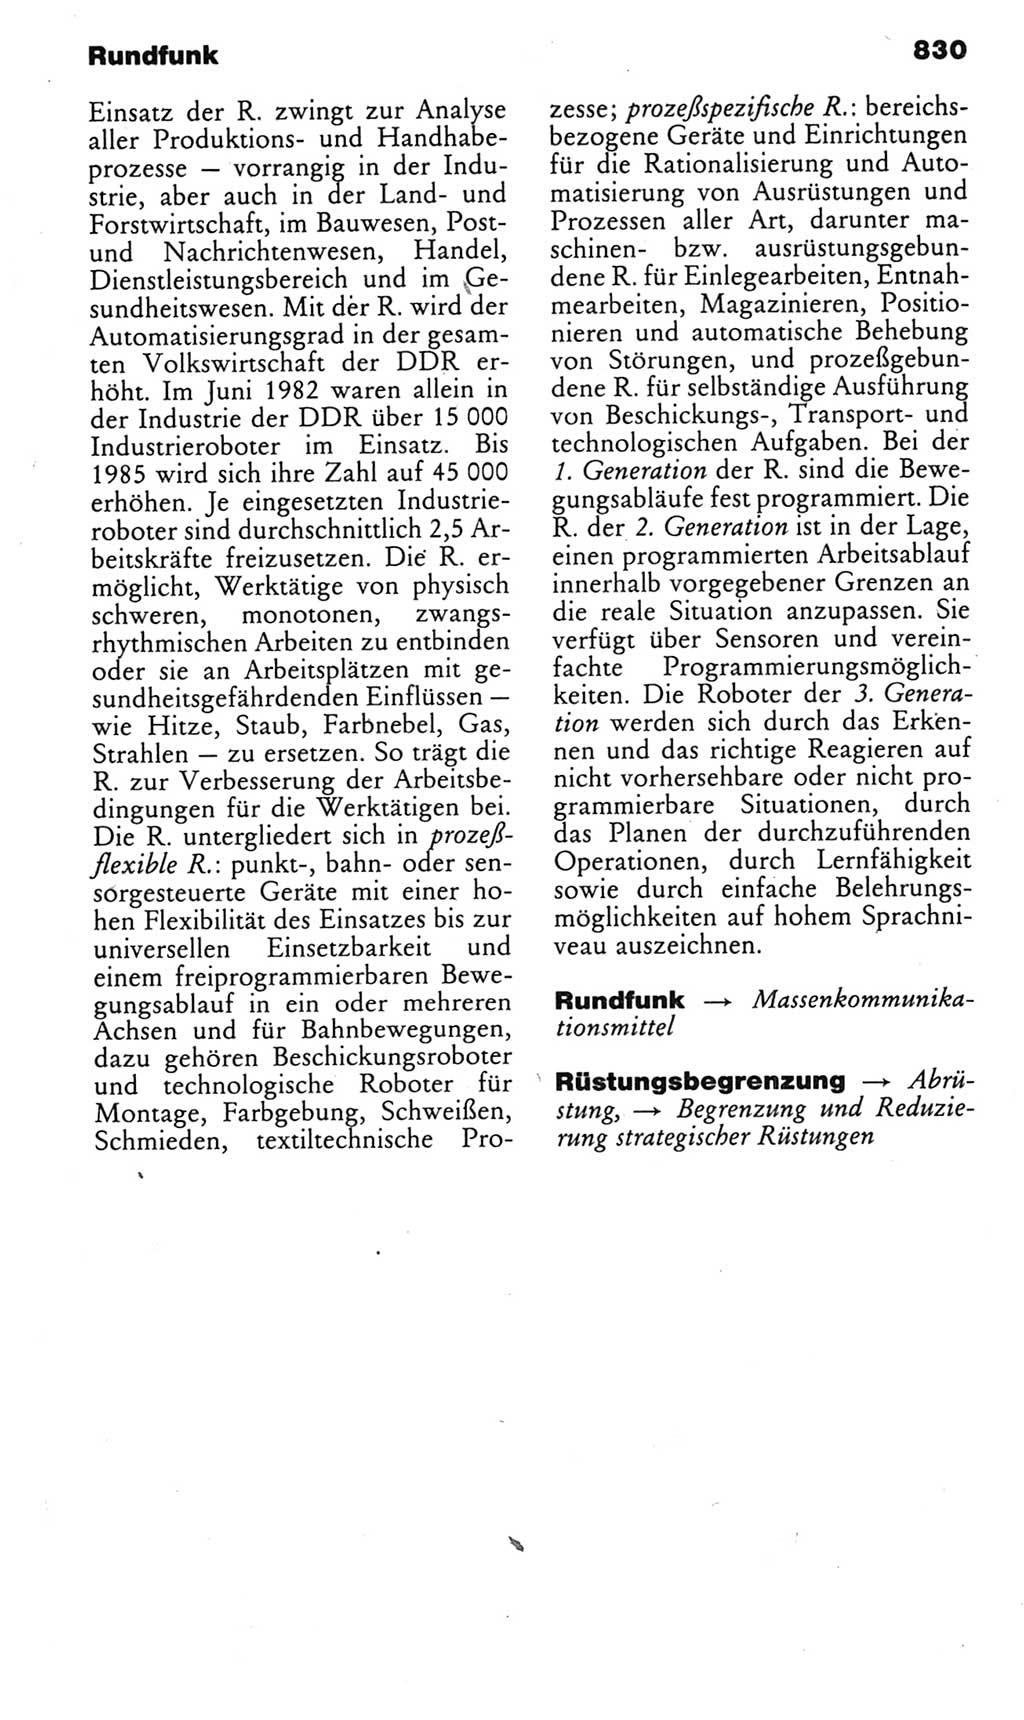 Kleines politisches Wörterbuch [Deutsche Demokratische Republik (DDR)] 1985, Seite 830 (Kl. pol. Wb. DDR 1985, S. 830)